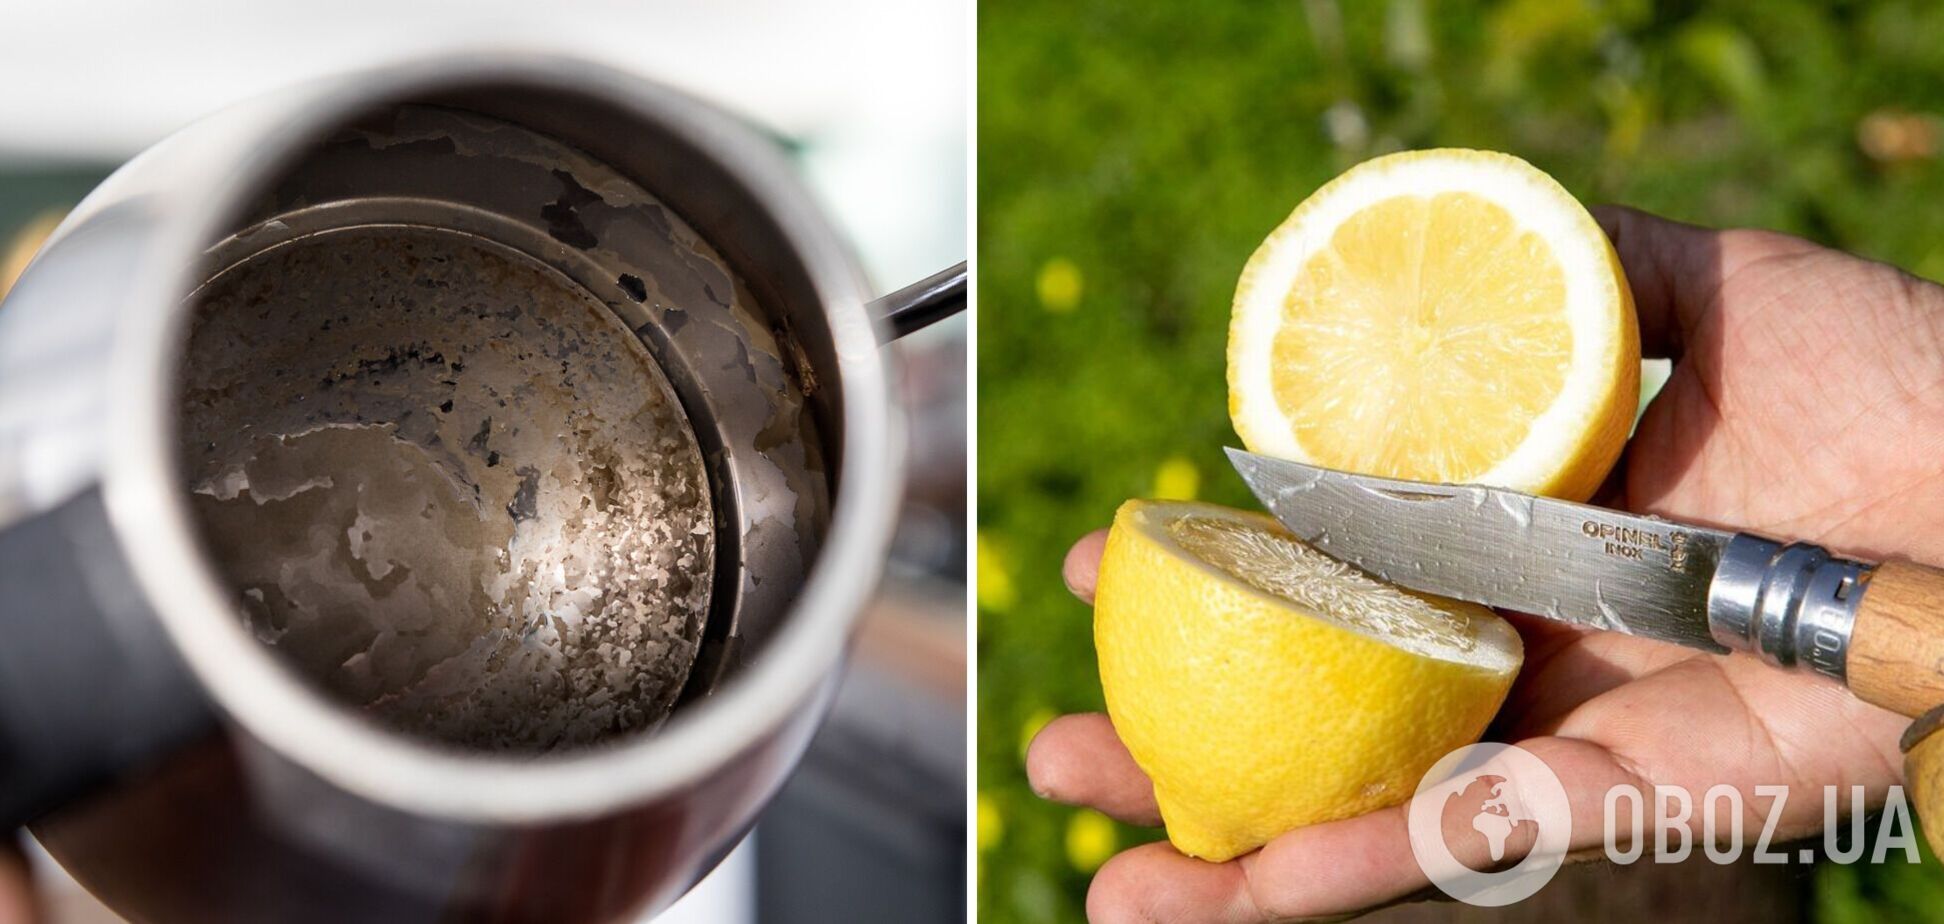 Работает на 100%: гениальный дешевый способ отчистить чайник от накипи